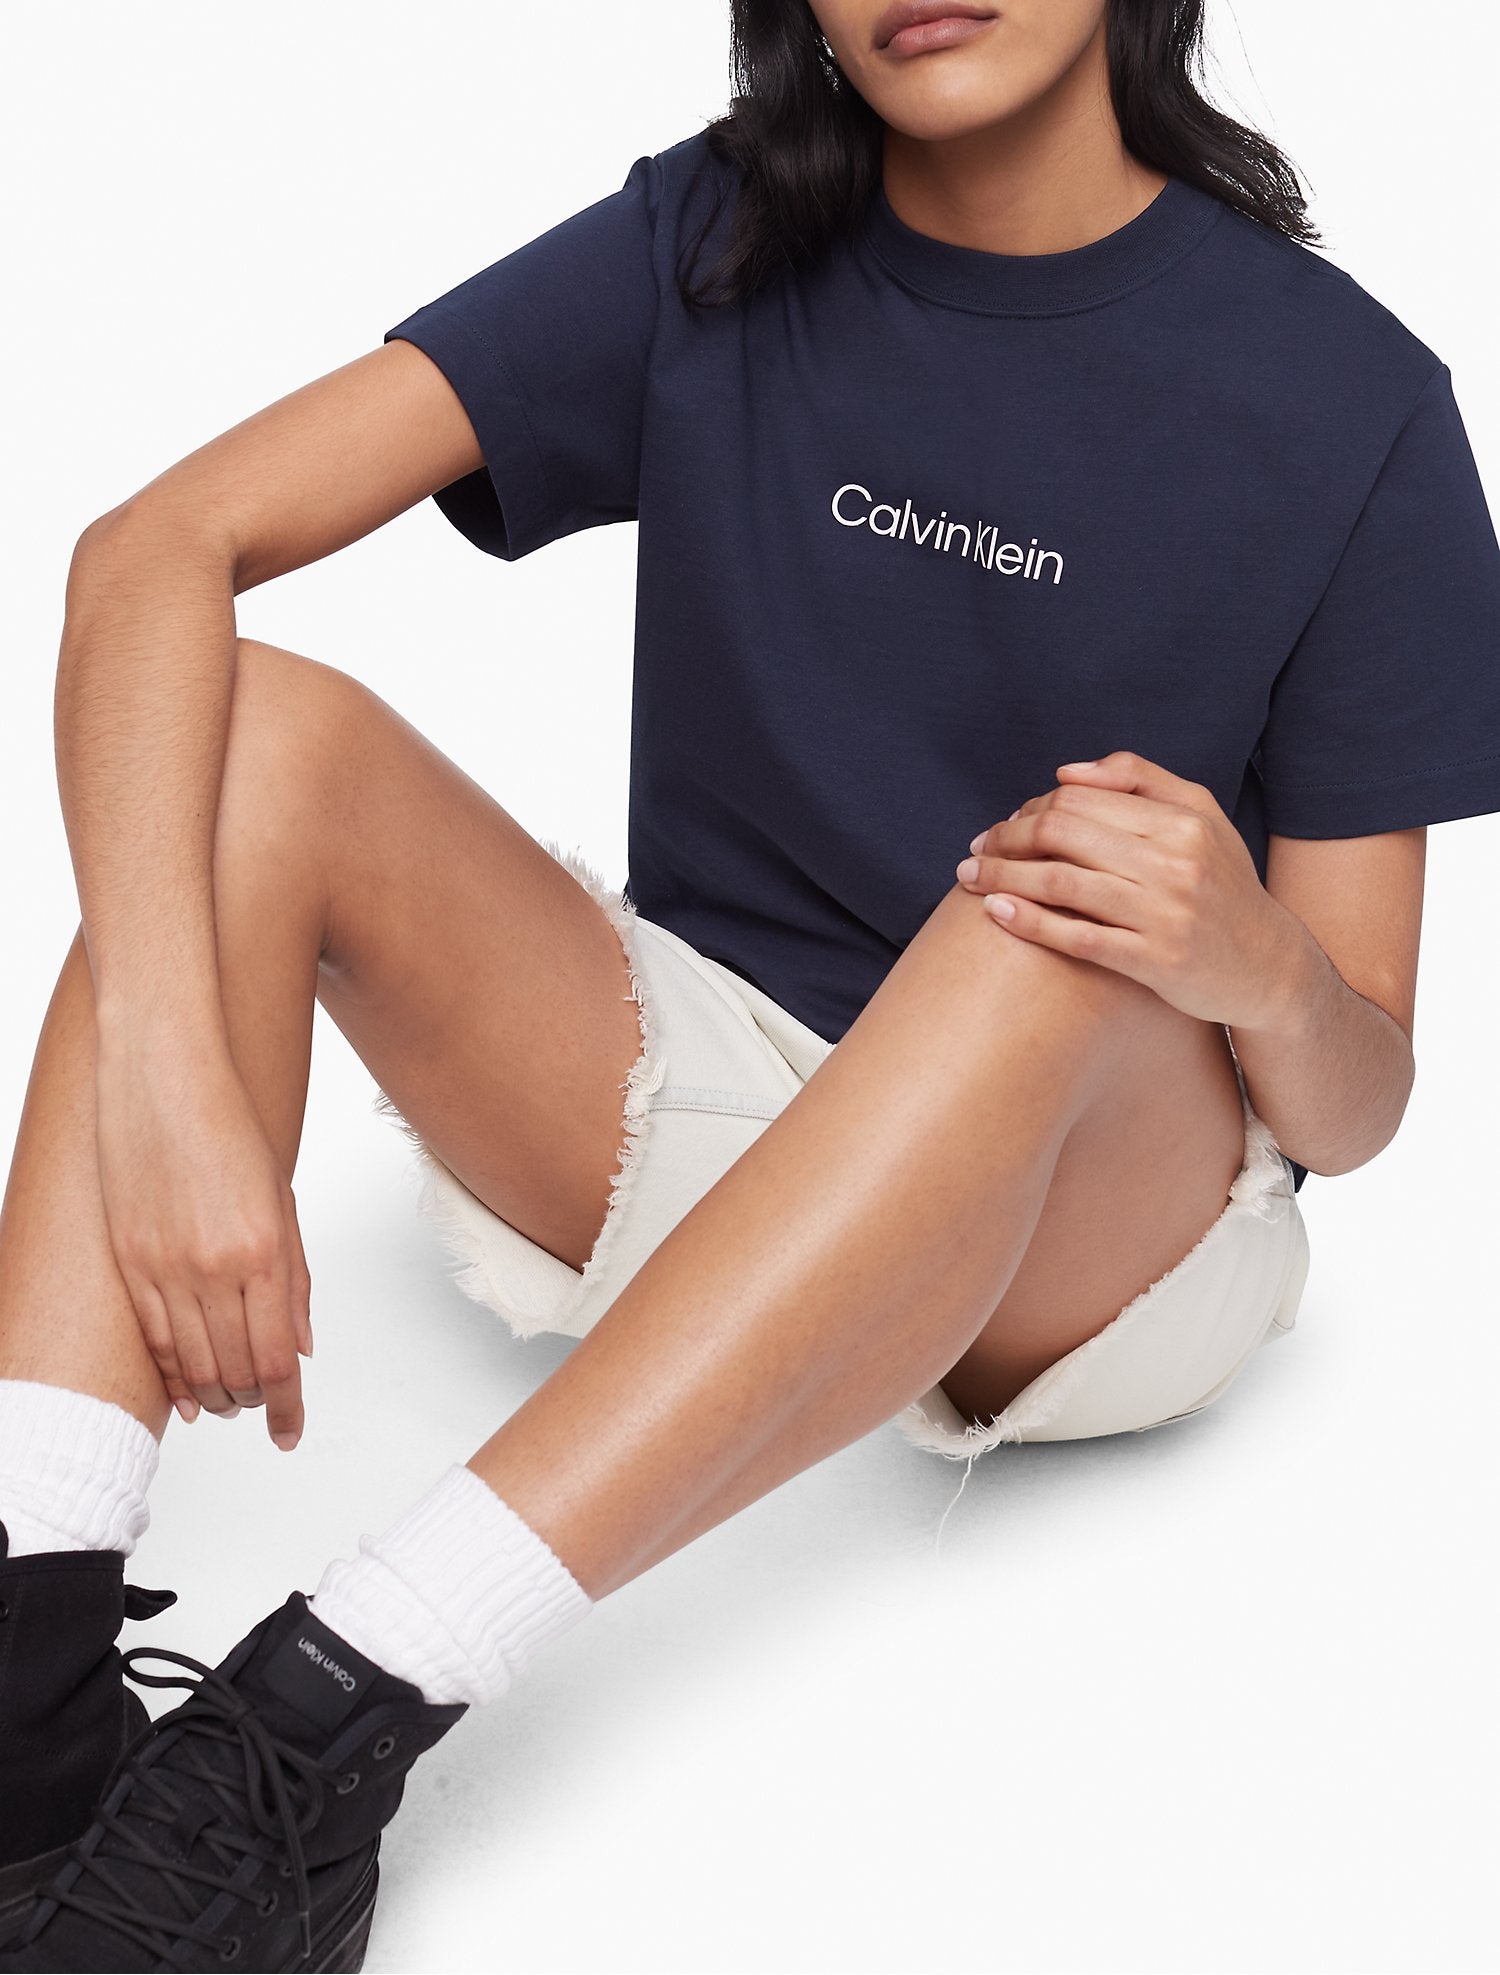 Calvin Klein Relaxed Fit Standard Logo Crewneck T-Shirt - Women